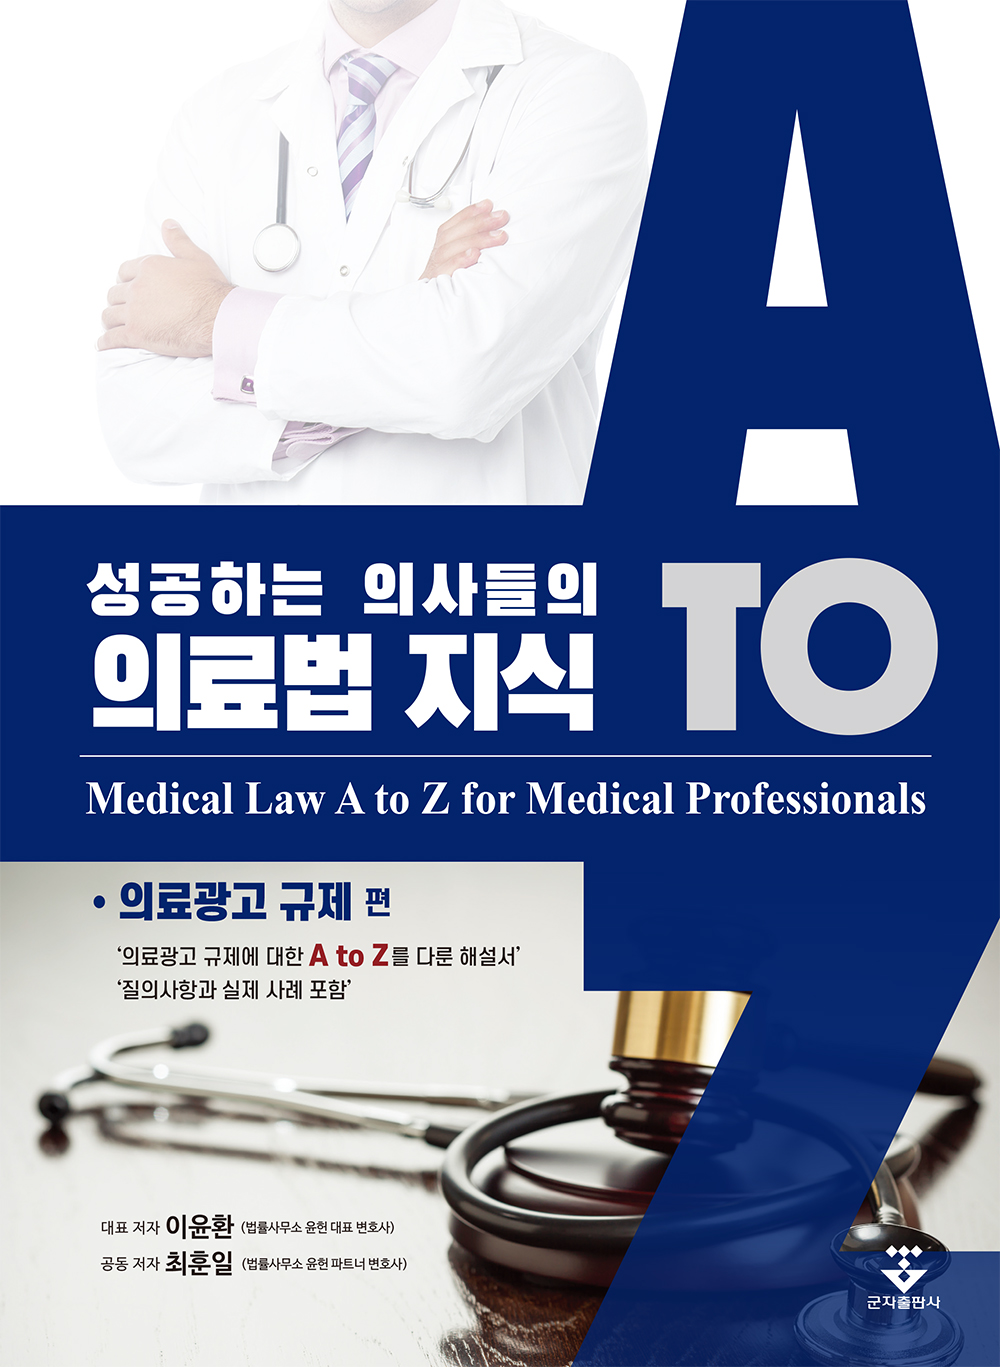 성공하는 의사들의 의료법 지식 (의료광고 규제 편)